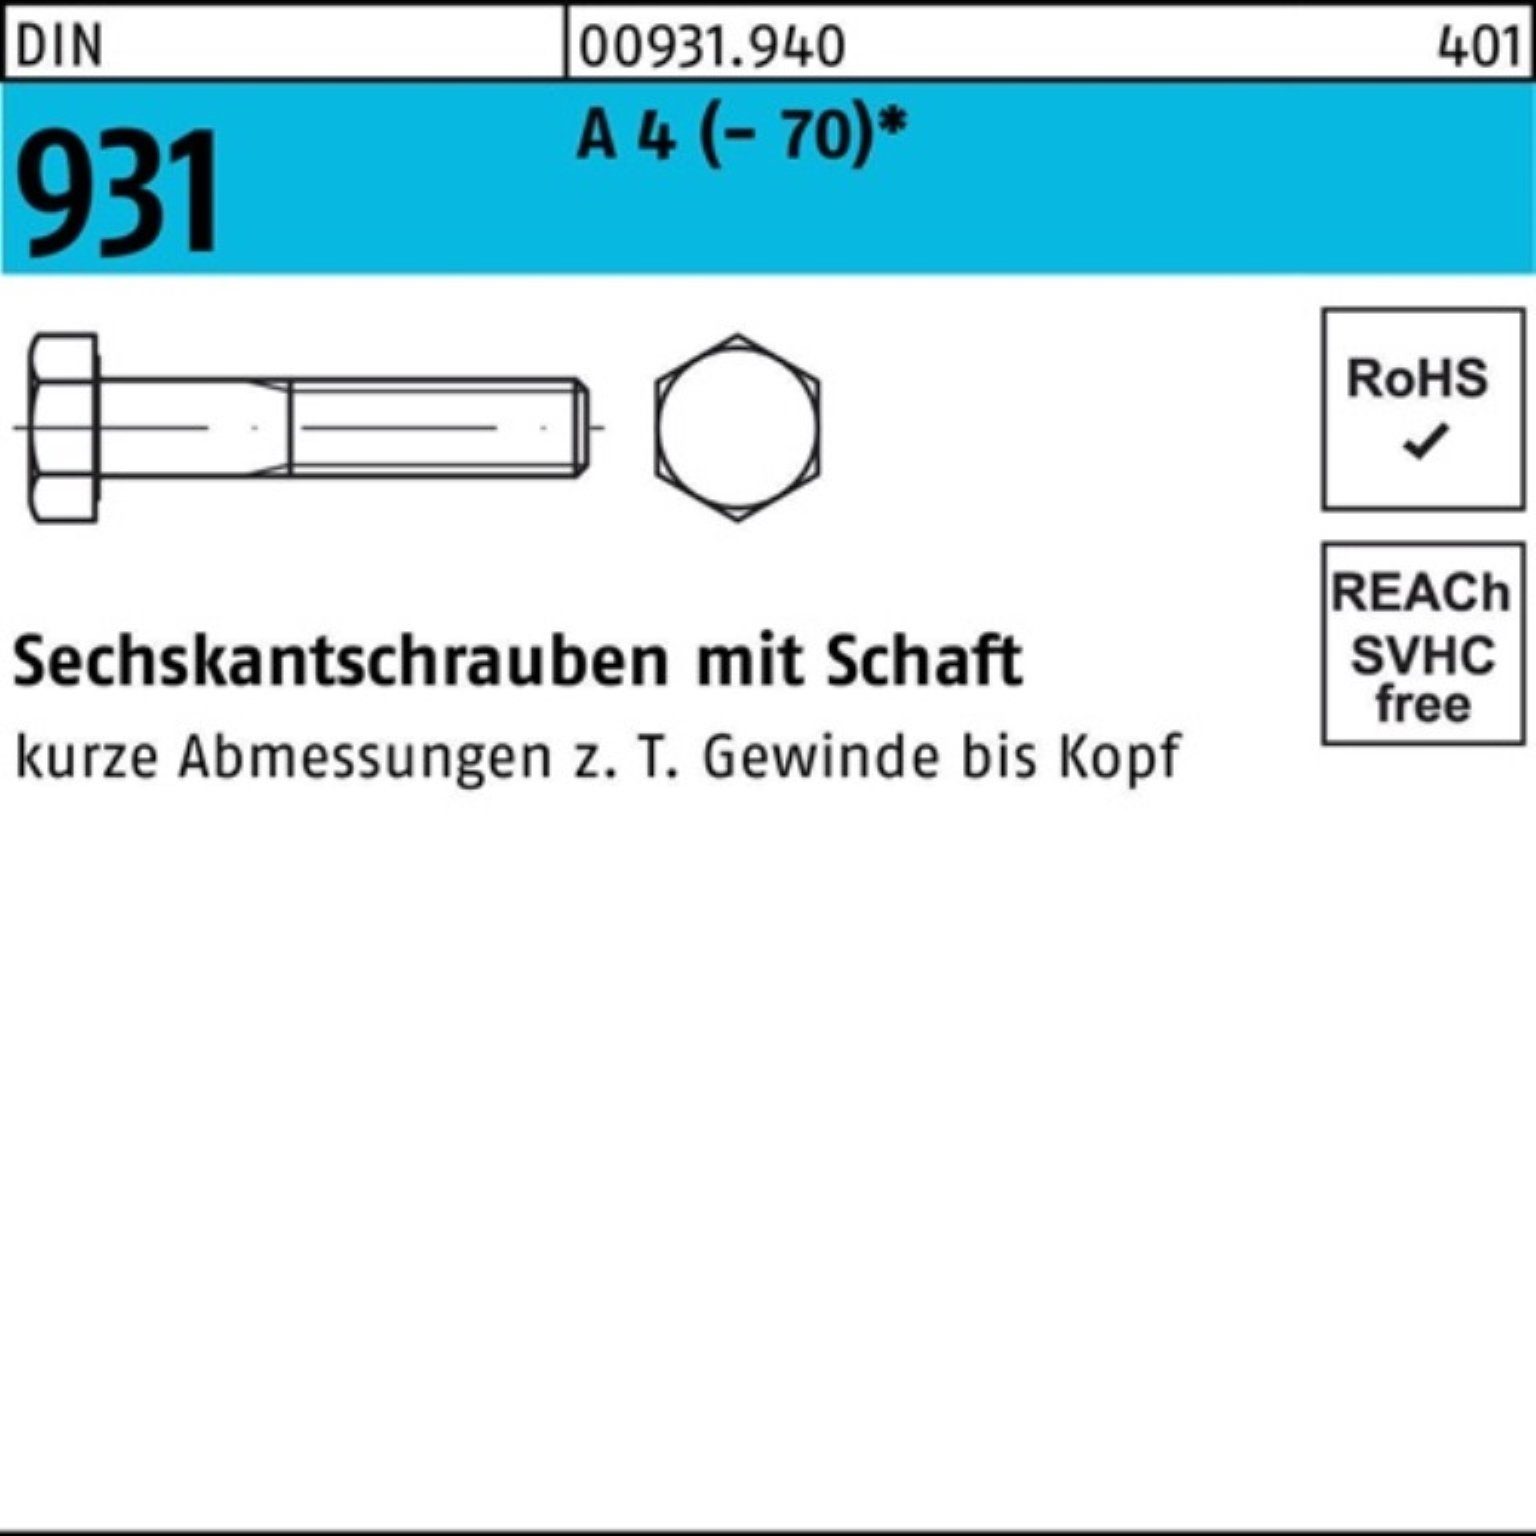 Reyher Sechskantschraube 200er Pack Sechskantschraube DIN 931 Schaft M6x 30 A 4 (70) 200 Stü